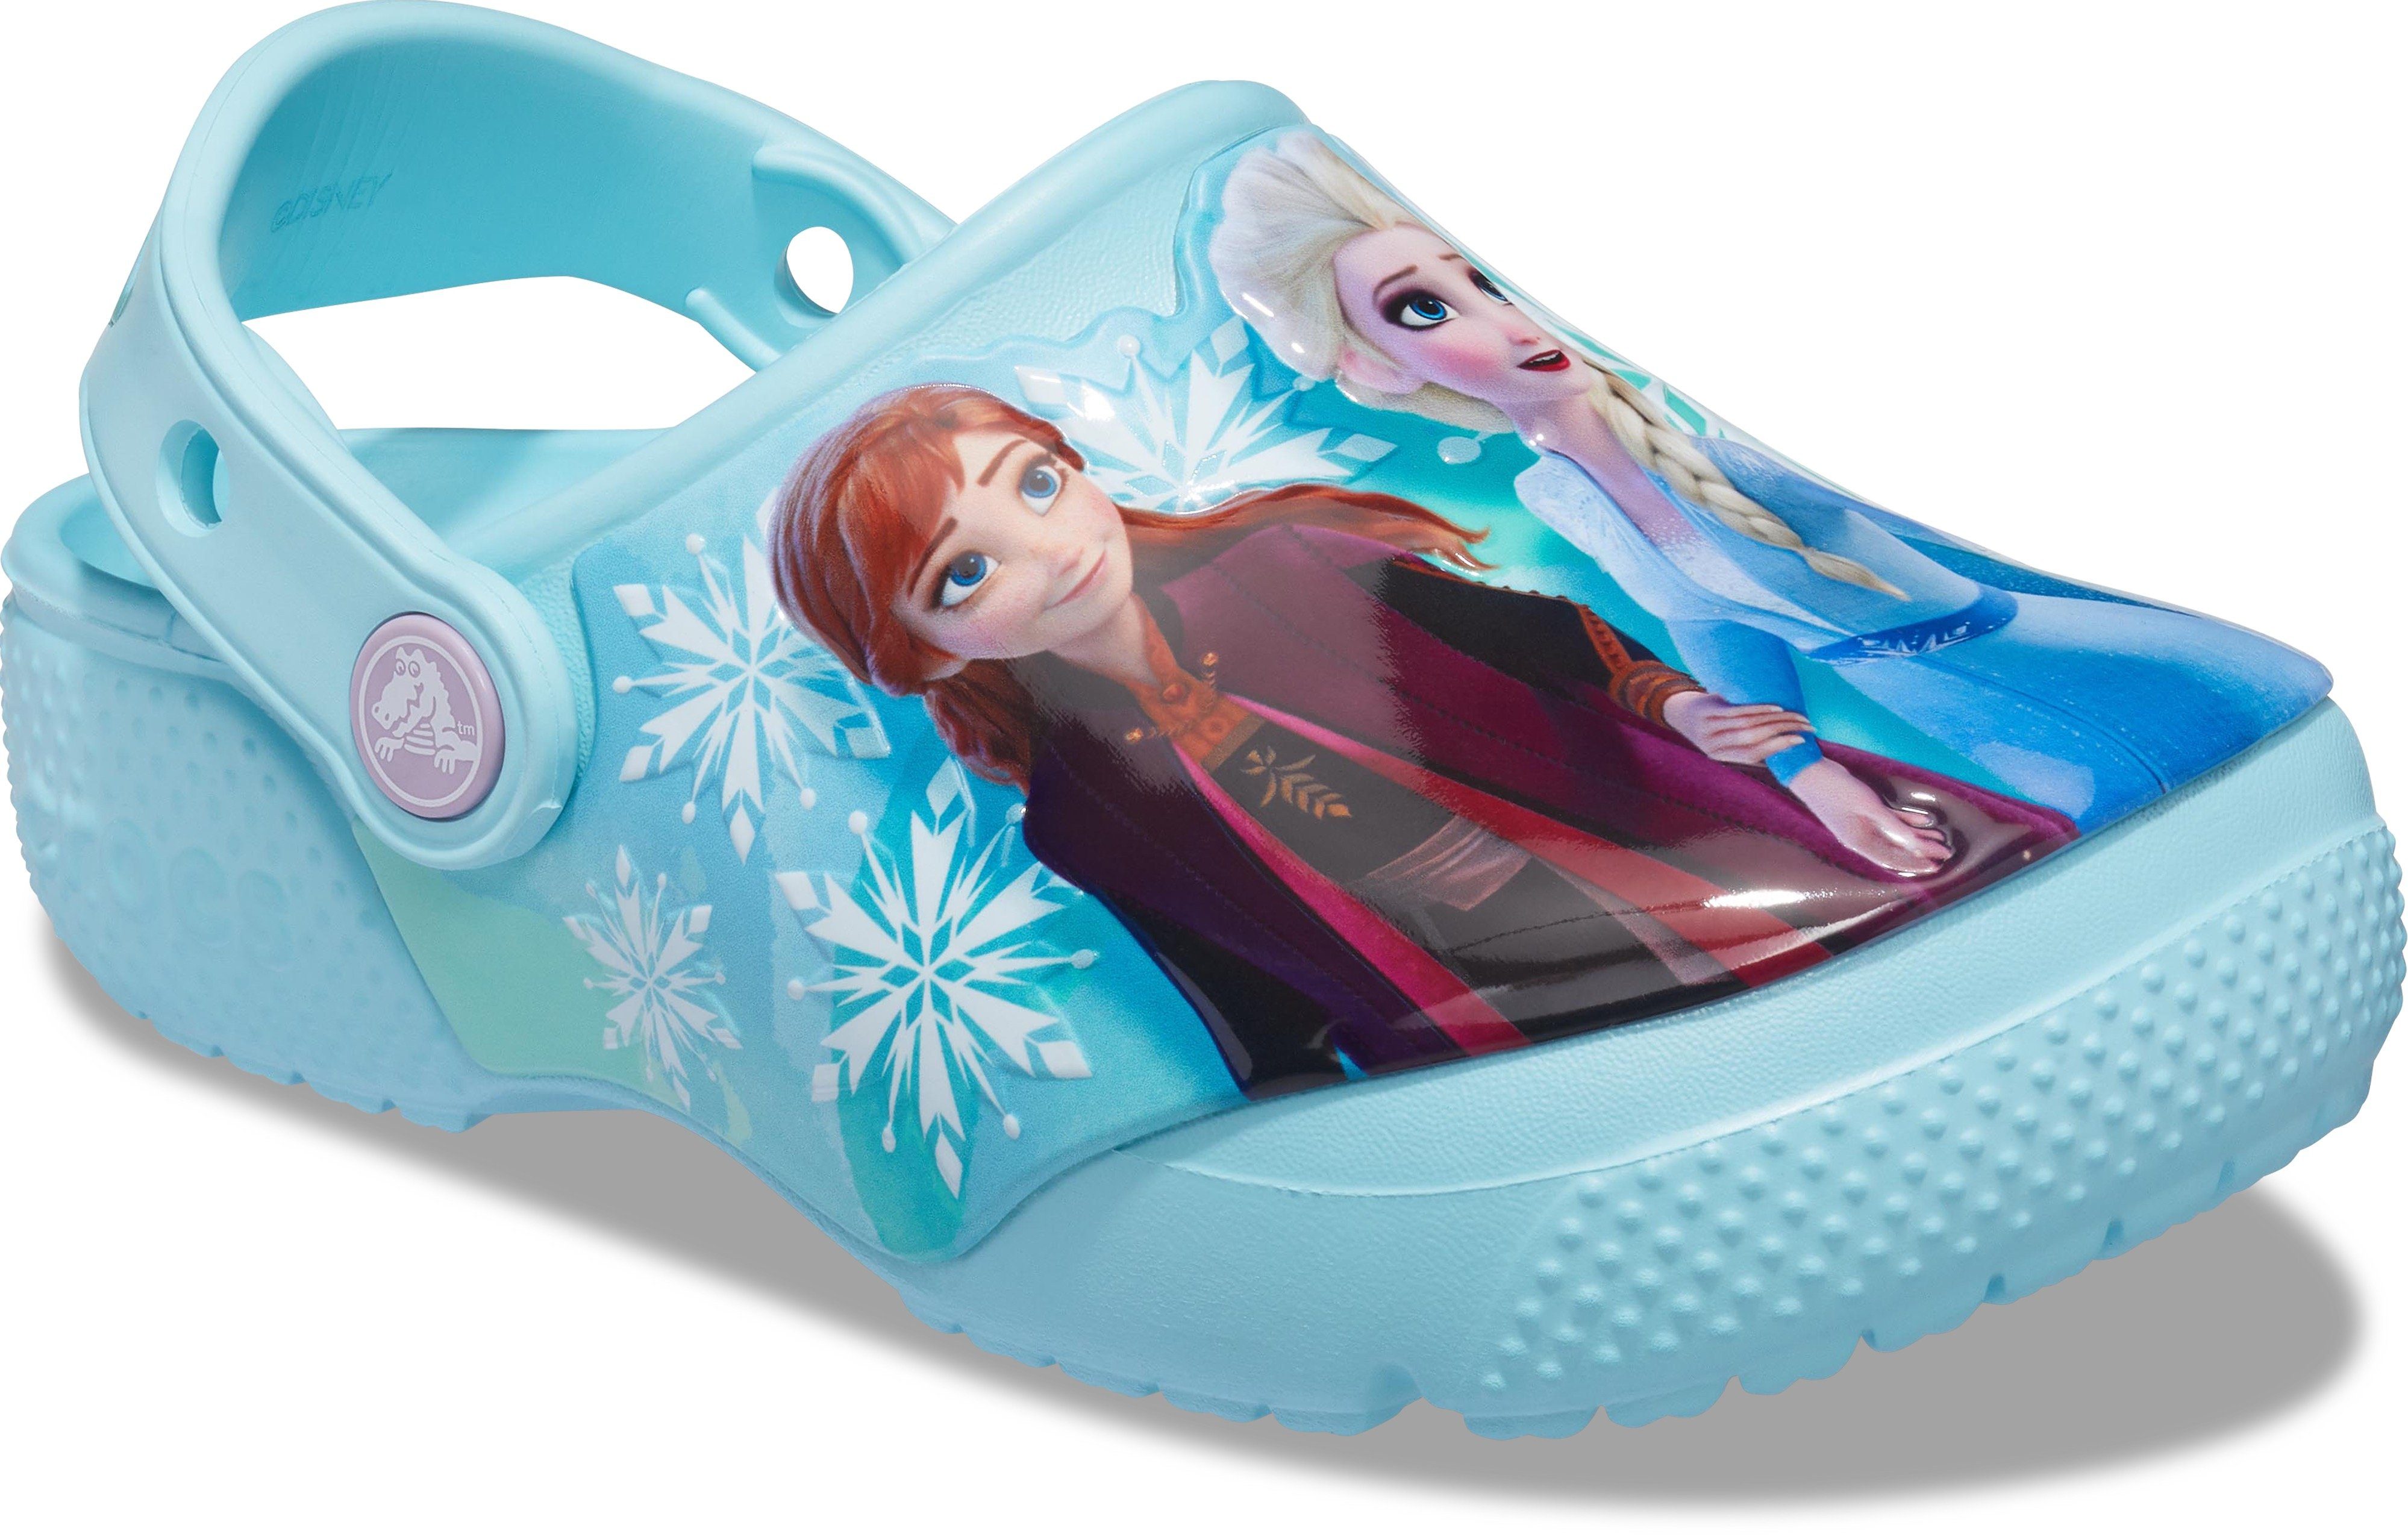 Crocs FL Disney Frozen 2 Clog K Clog mit Disney Motiv "Elsa und Anna" aus die Eiskönigin